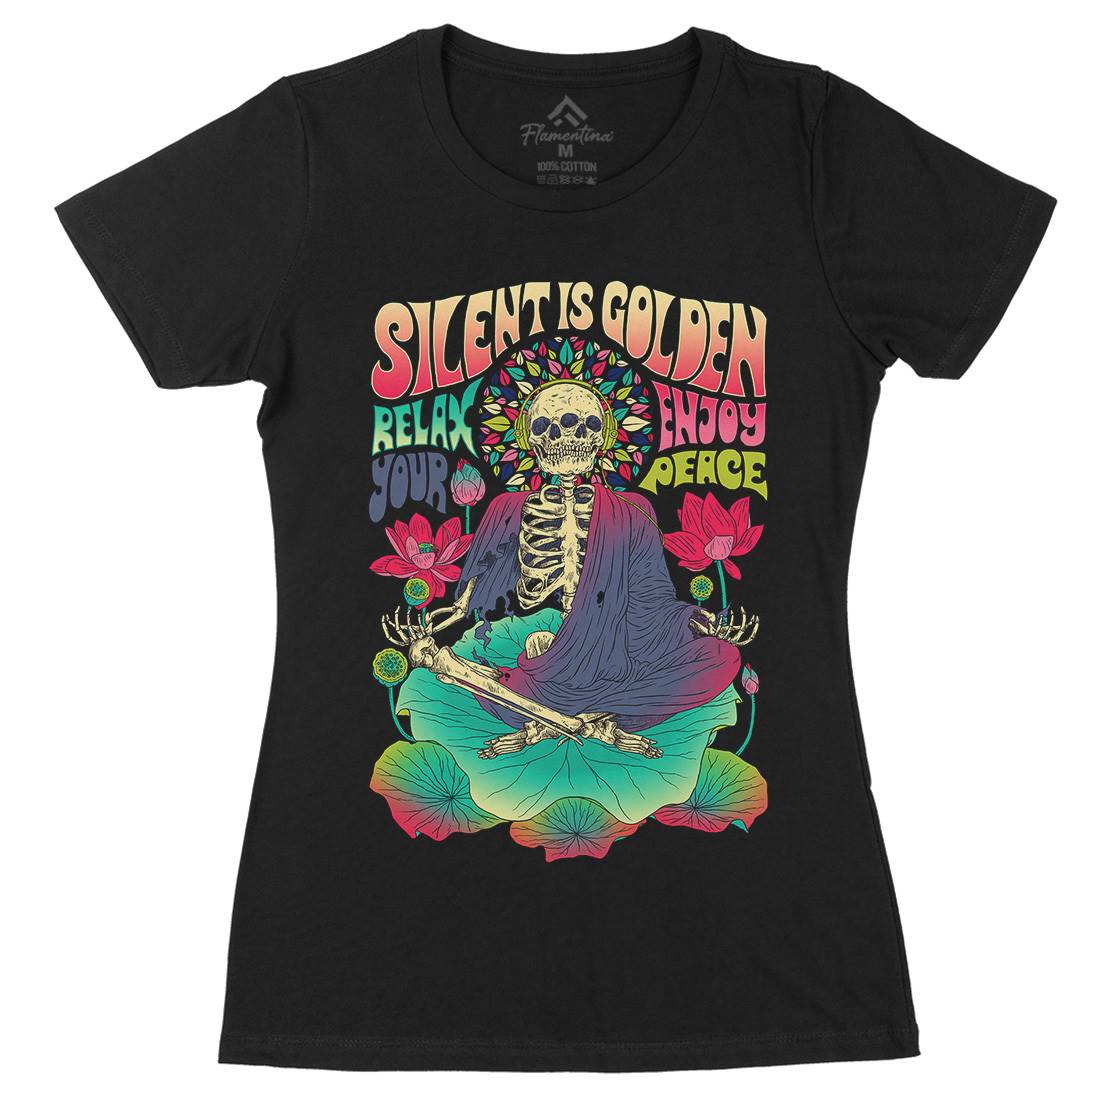 Silent Is Golden Womens Organic Crew Neck T-Shirt Peace D080